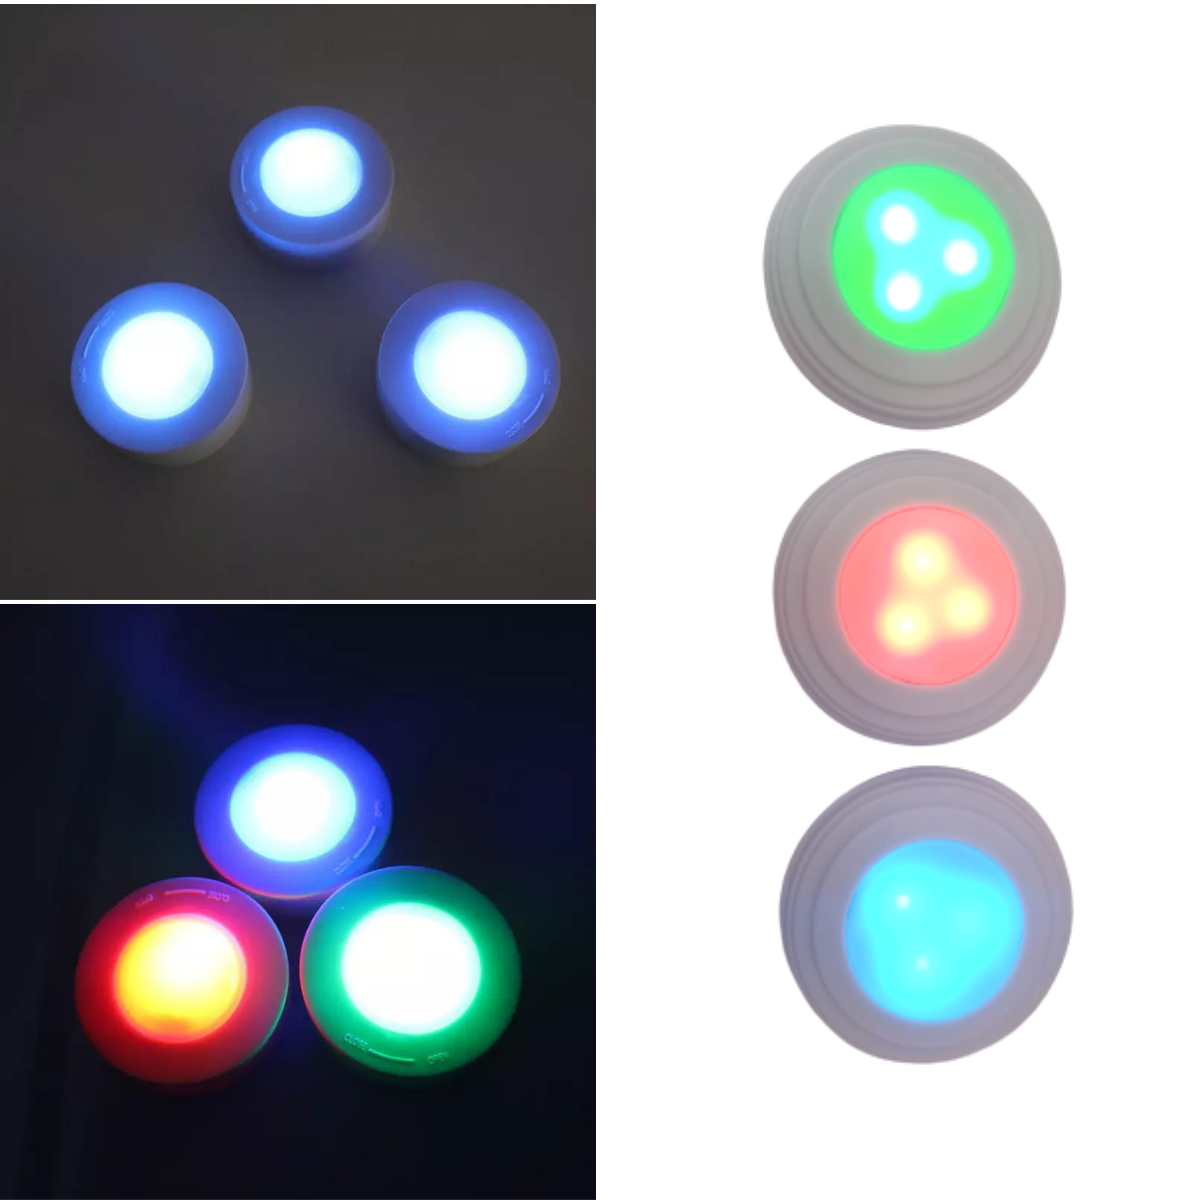 Kit 3 Spots Luminárias Lâmpadas Redondas Sem Fio RGB Coloridas Multicolor Led Com Controle Remoto Pa - 6